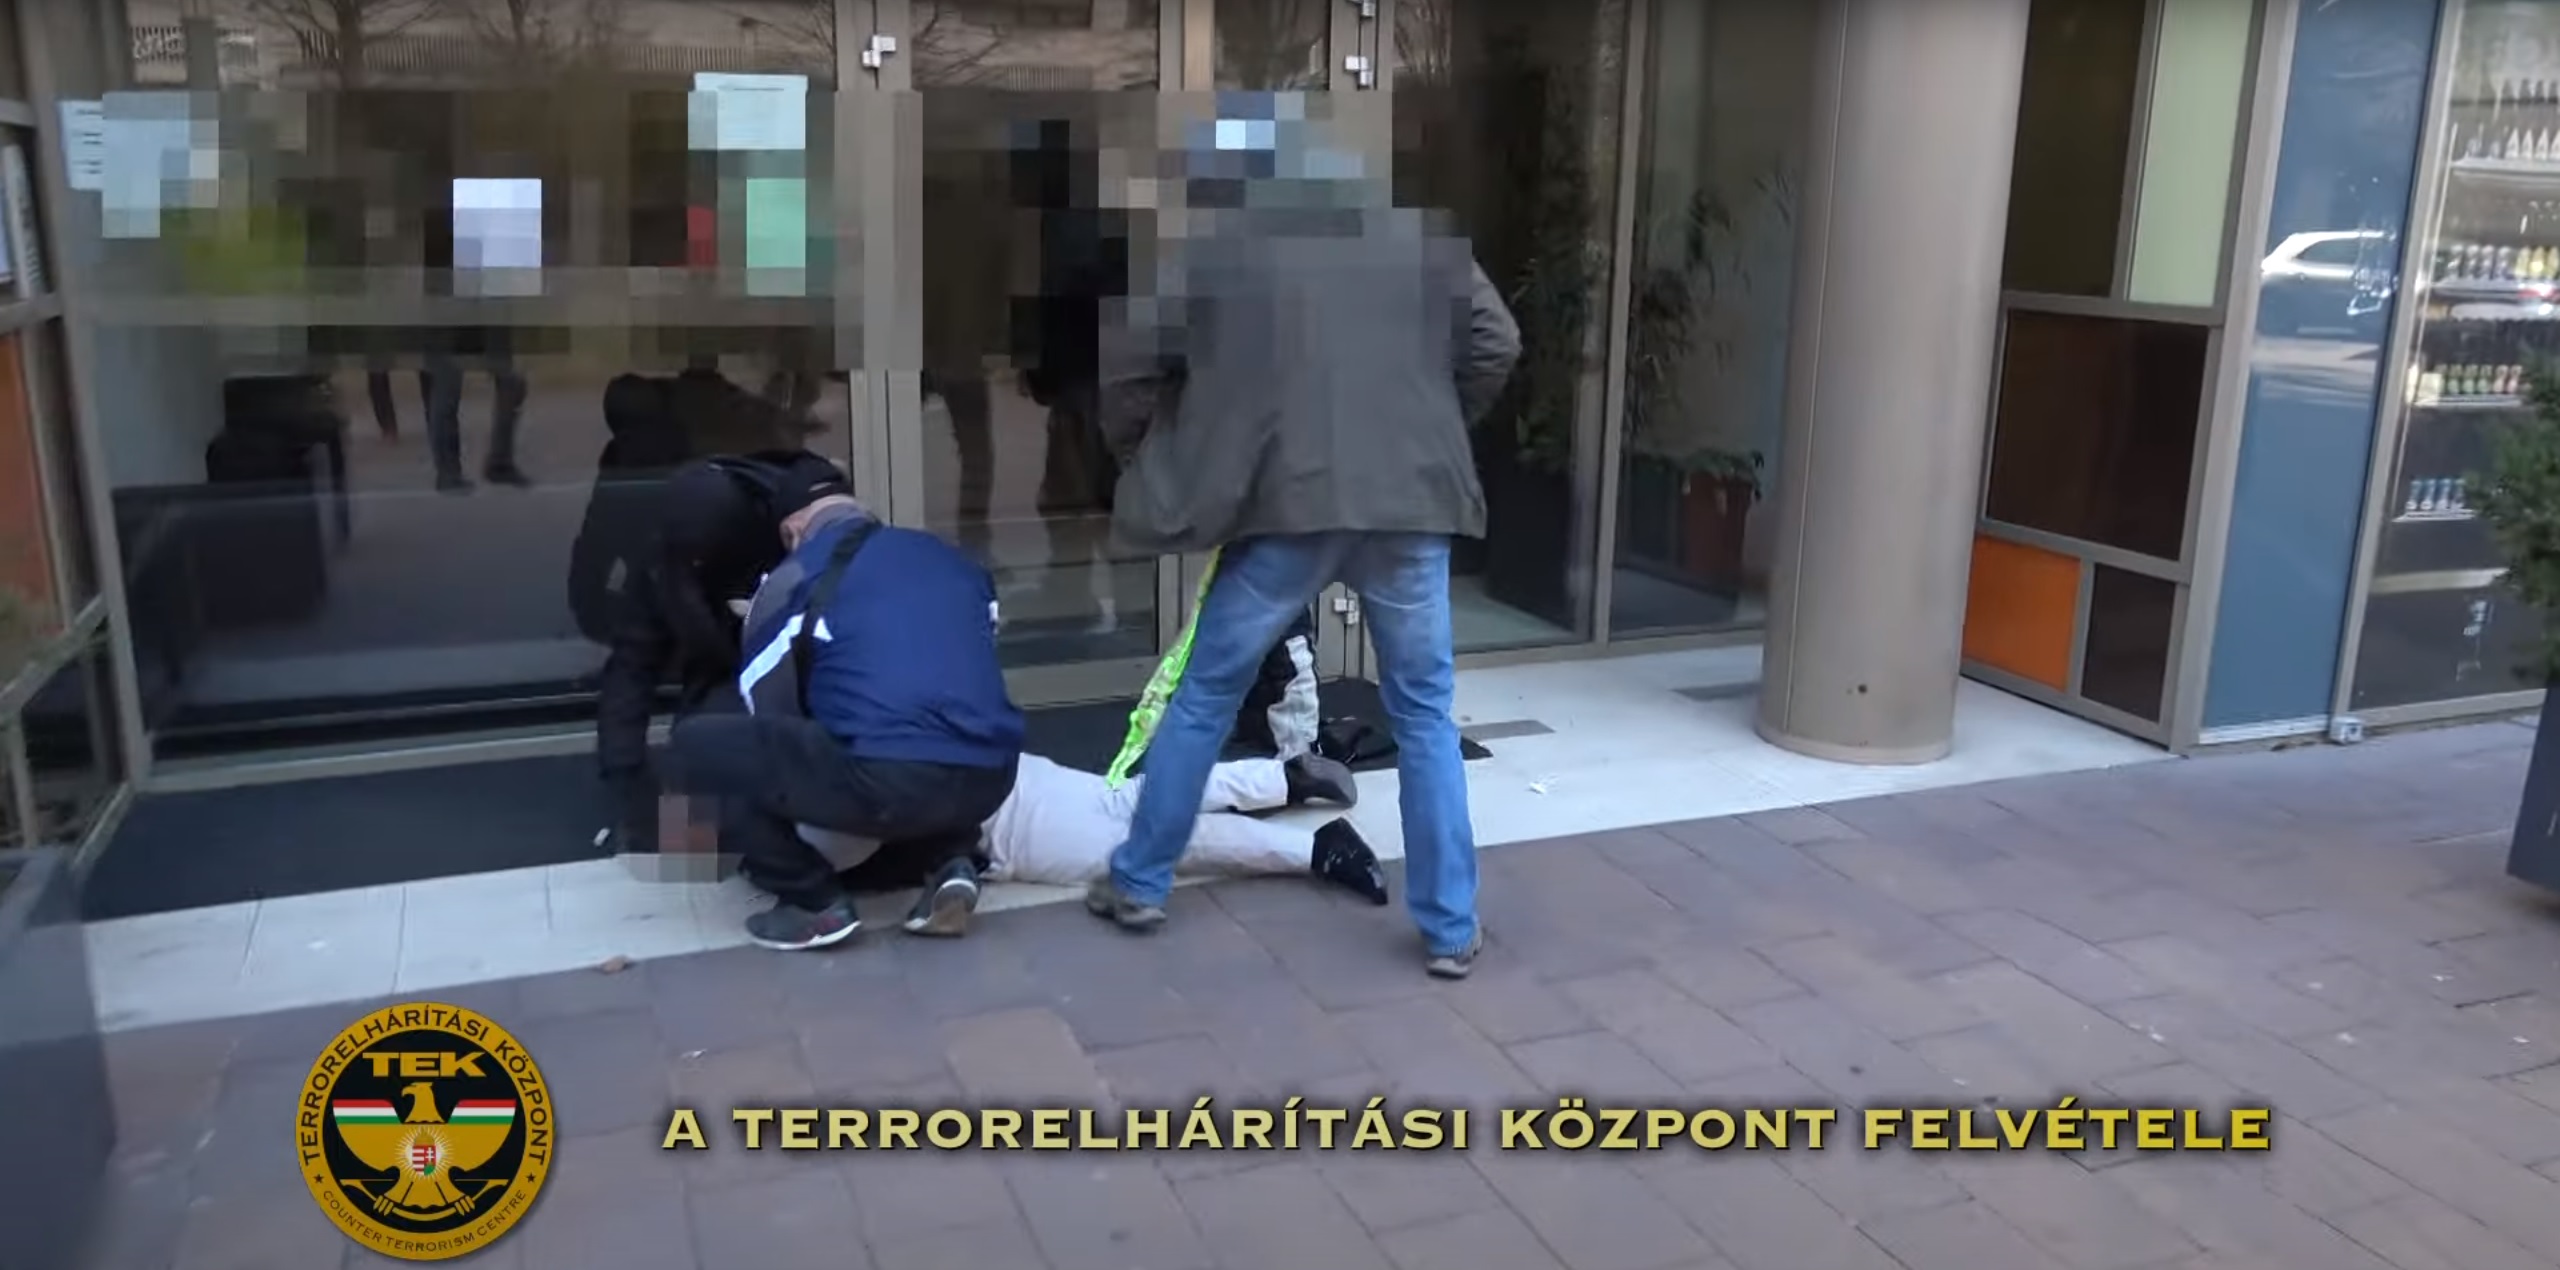 波蘭男子因綁架、劫持人質、武裝搶劫在布達佩斯被捕